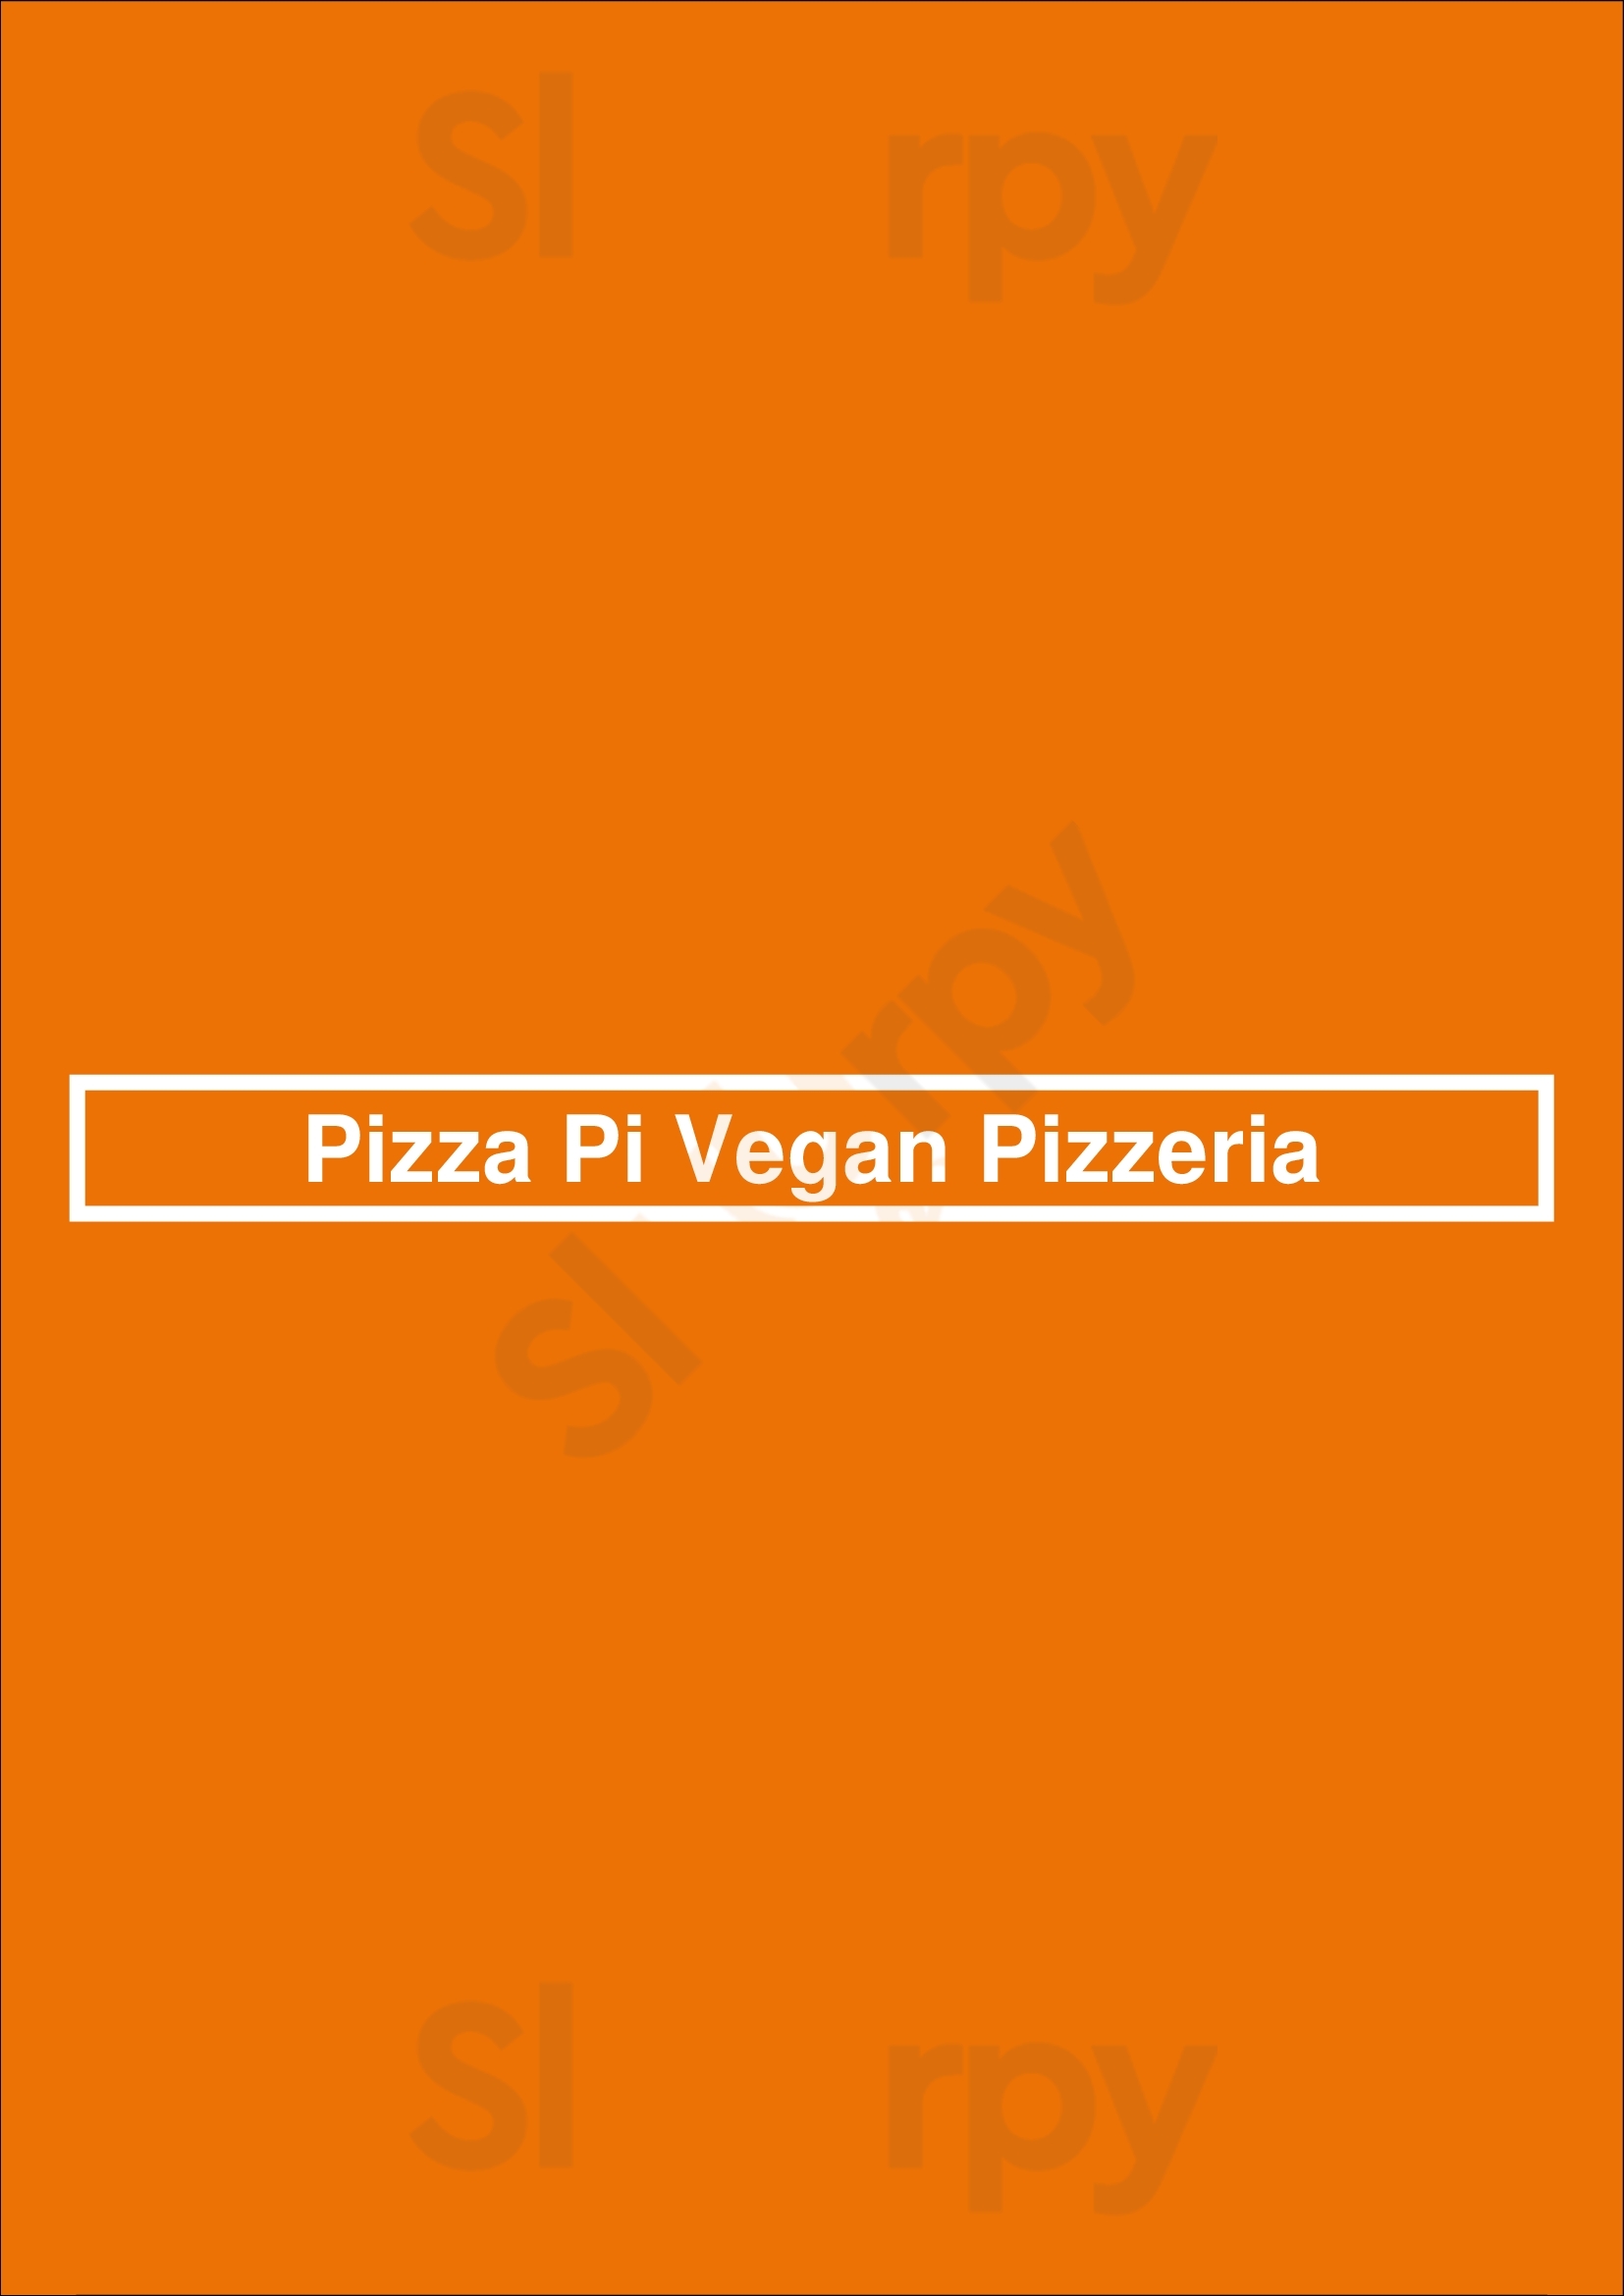 Pizza Pi Vegan Pizzeria Seattle Menu - 1